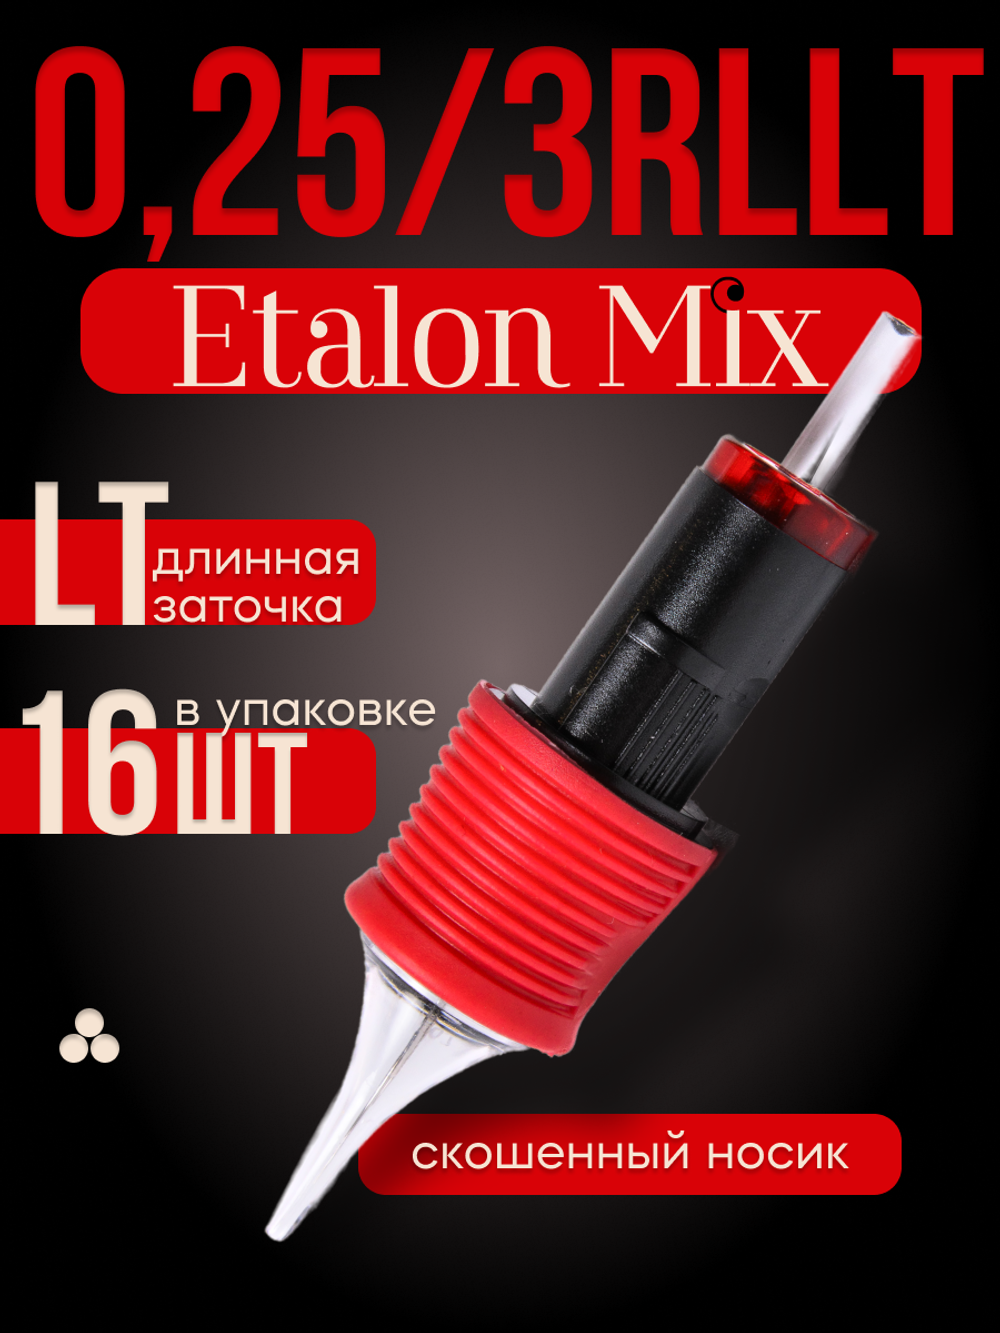 Картриджи для татуажа Etalon Mix 0.25/3RLLT 16 шт